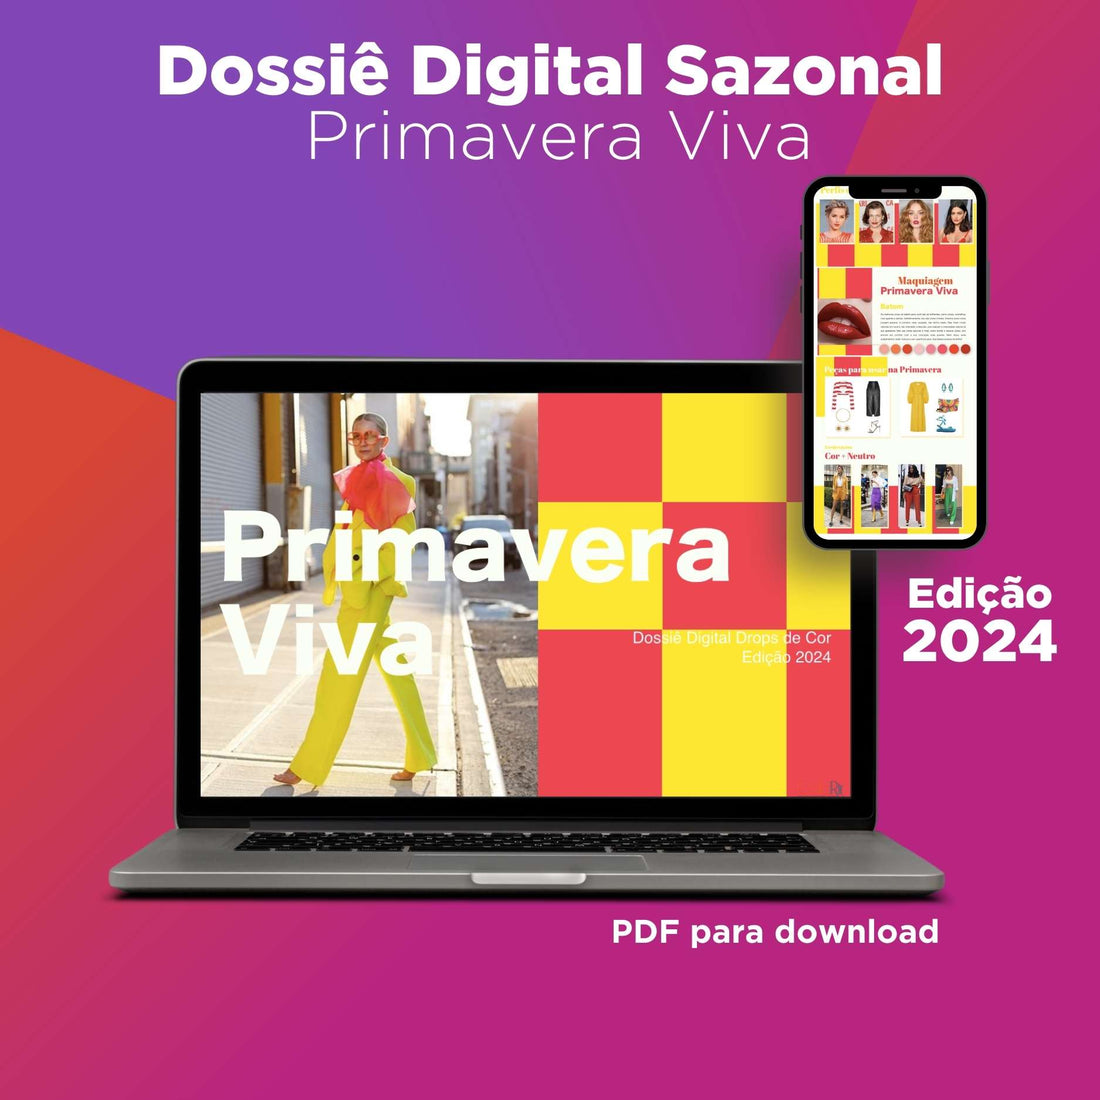 Digital Seasonal Dossier - Primavera Viva - 2024 Edition